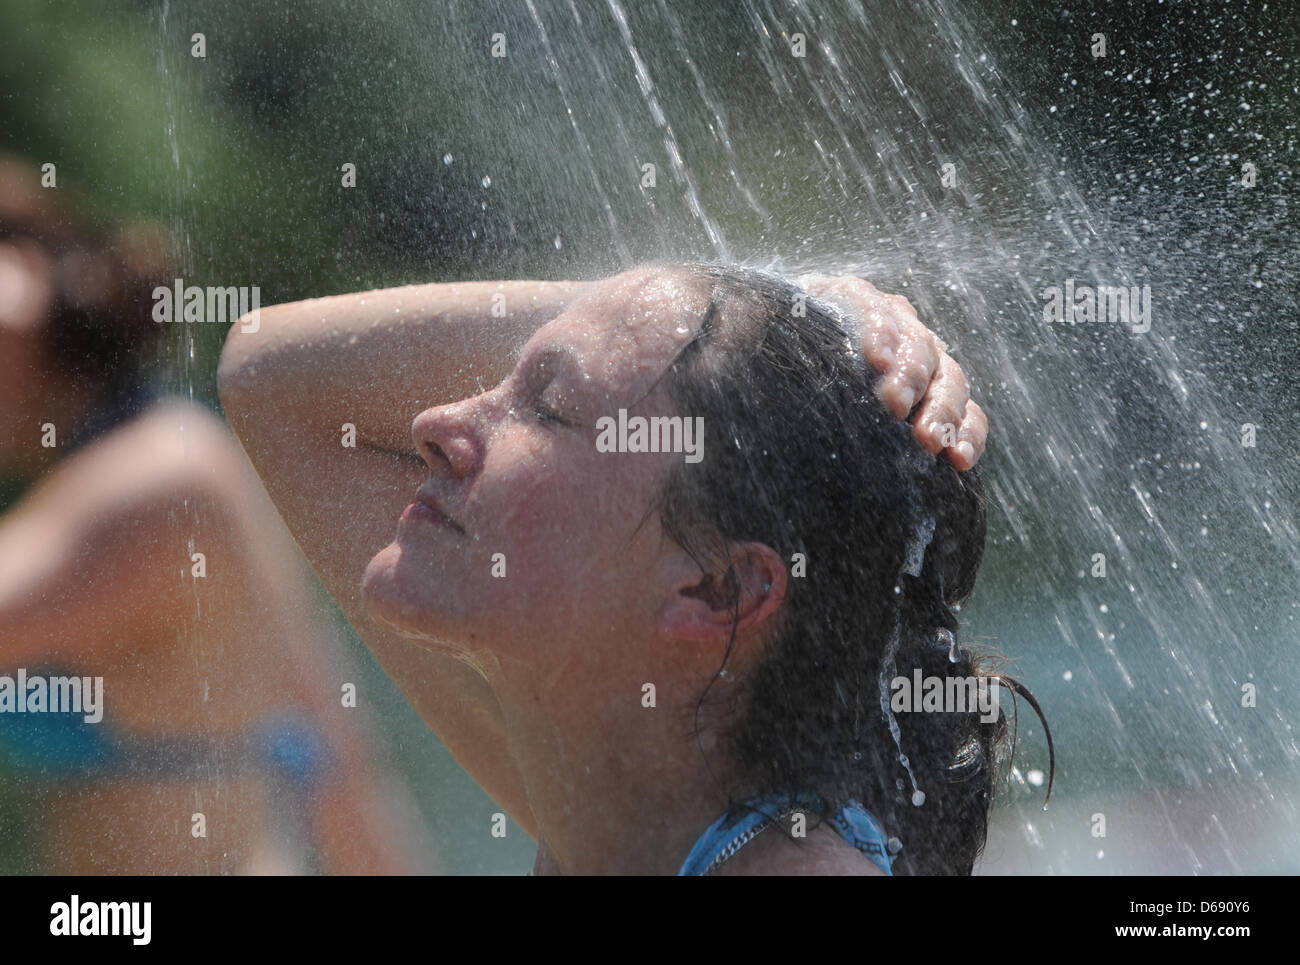 Selina genießt eine kalte Dusche am Gifiz See öffentliche Strandbad in Offenburg, Deutschland, 26. Juli 2012. Menschen suchen Erfrischung an Seen und Schwimmbädern bei Temperaturen über 30 Grad Celsius. Foto: PATRICK SEEGER Stockfoto